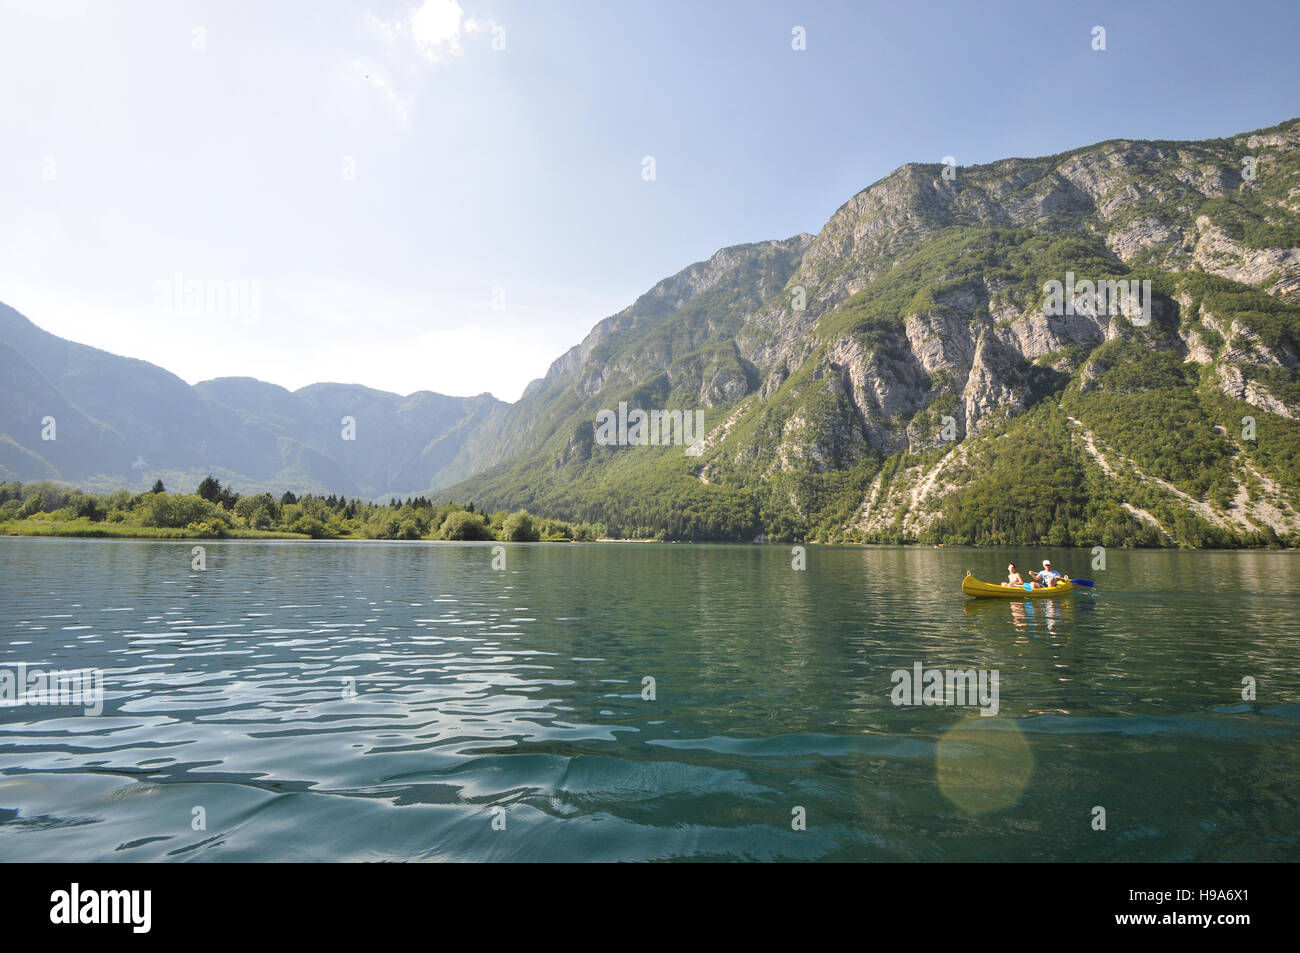 Dos personas en un kayak amarillo en el lago Bohinj, Eslovenia, con acantilados de las montañas de los Alpes Julianos en el fondo Foto de stock